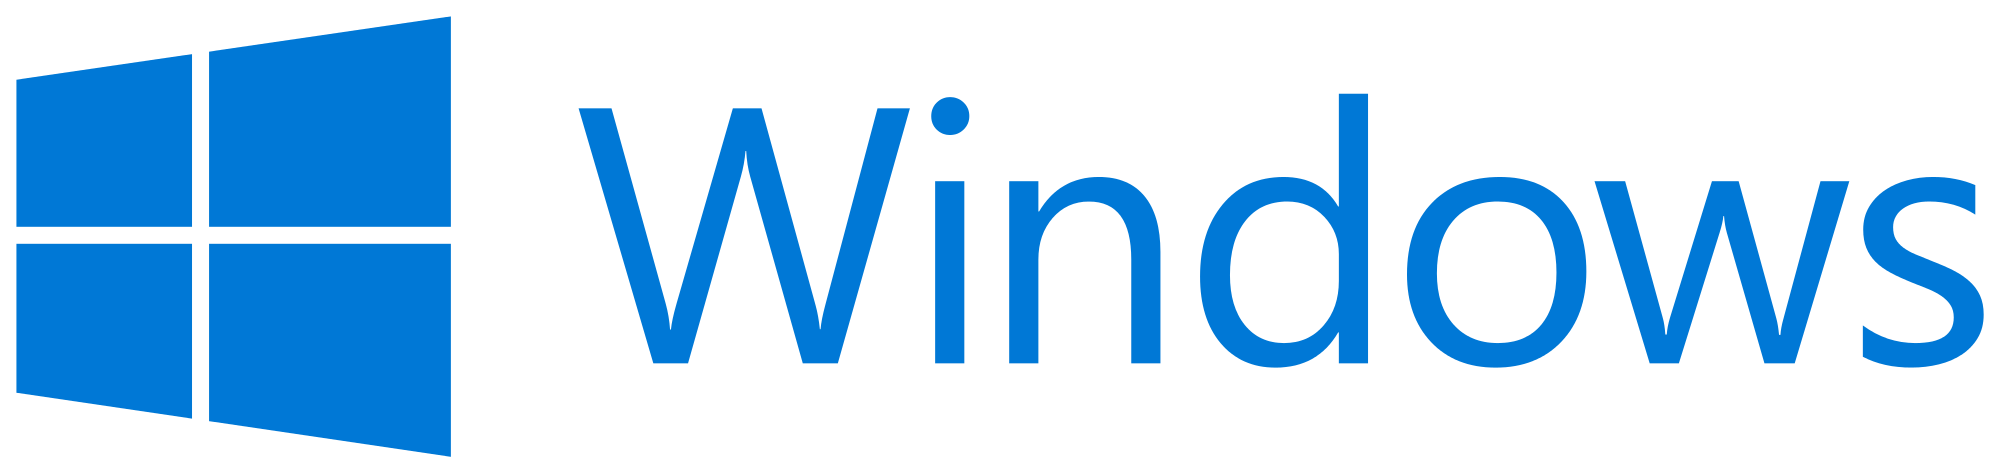 Windows Logo PNG Download Image